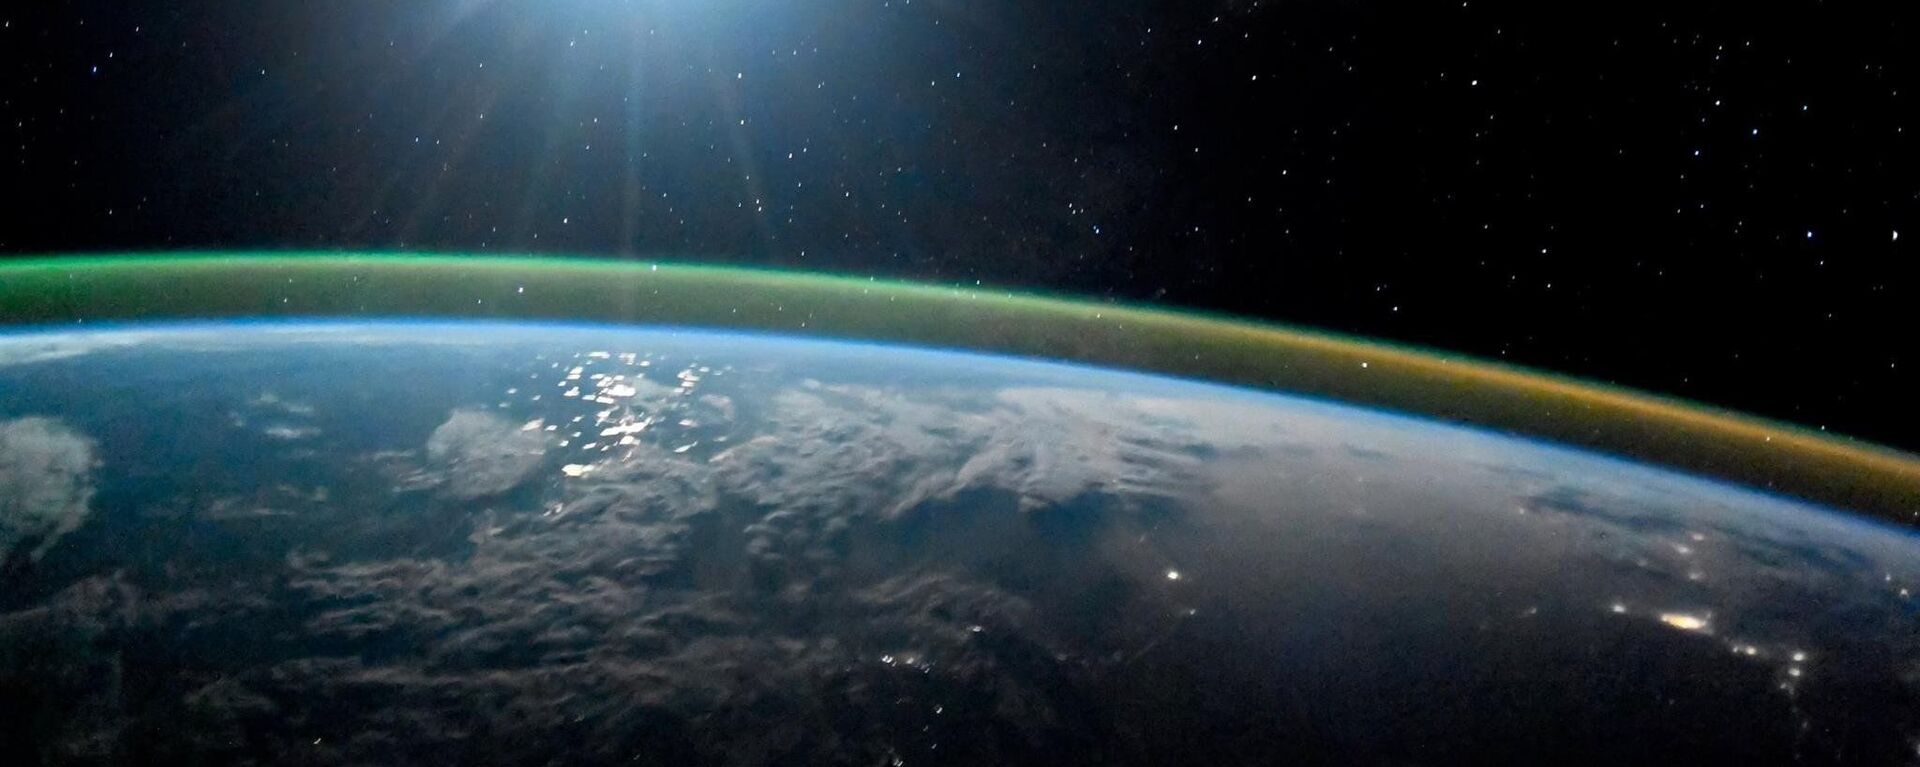 كوكب الأرض ليلا في ضوء القمر الشفق القطبي أورورا. 7 أكتوبر/ تشرين الأول 2017 - سبوتنيك عربي, 1920, 22.01.2022